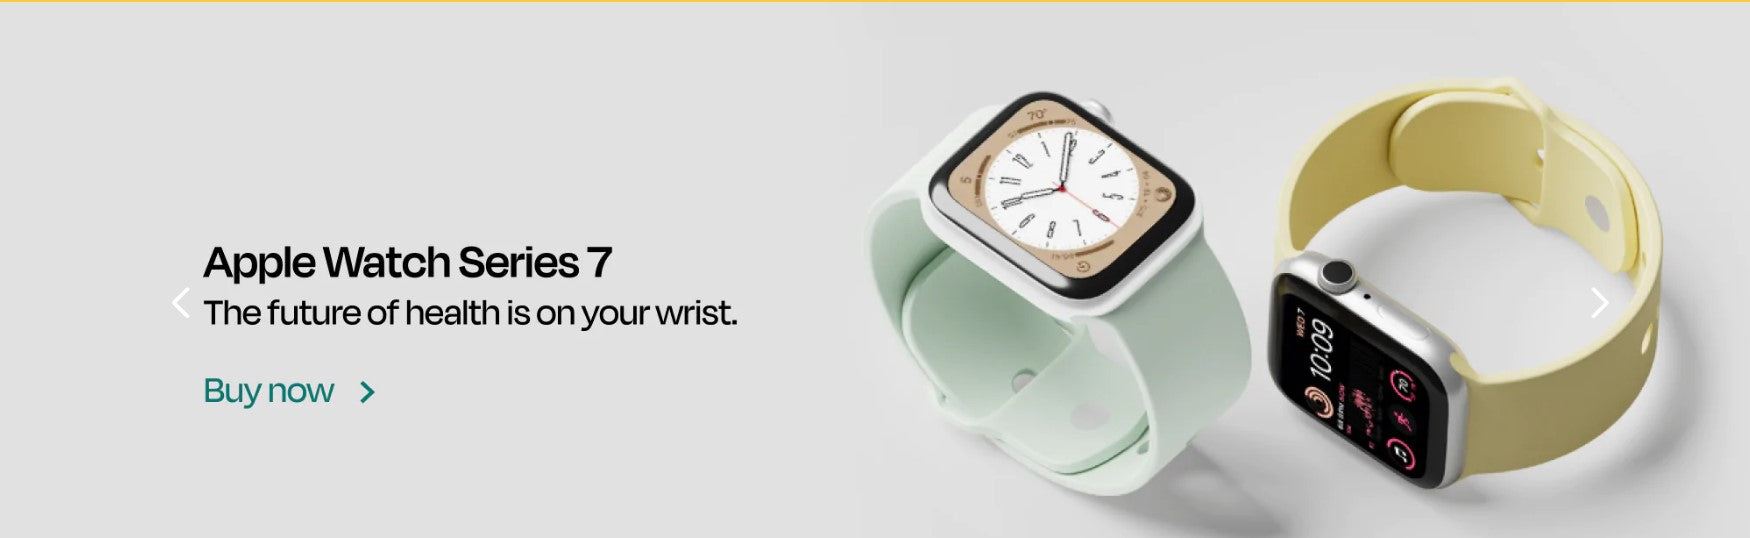 Loop mobile refurbished apple watch